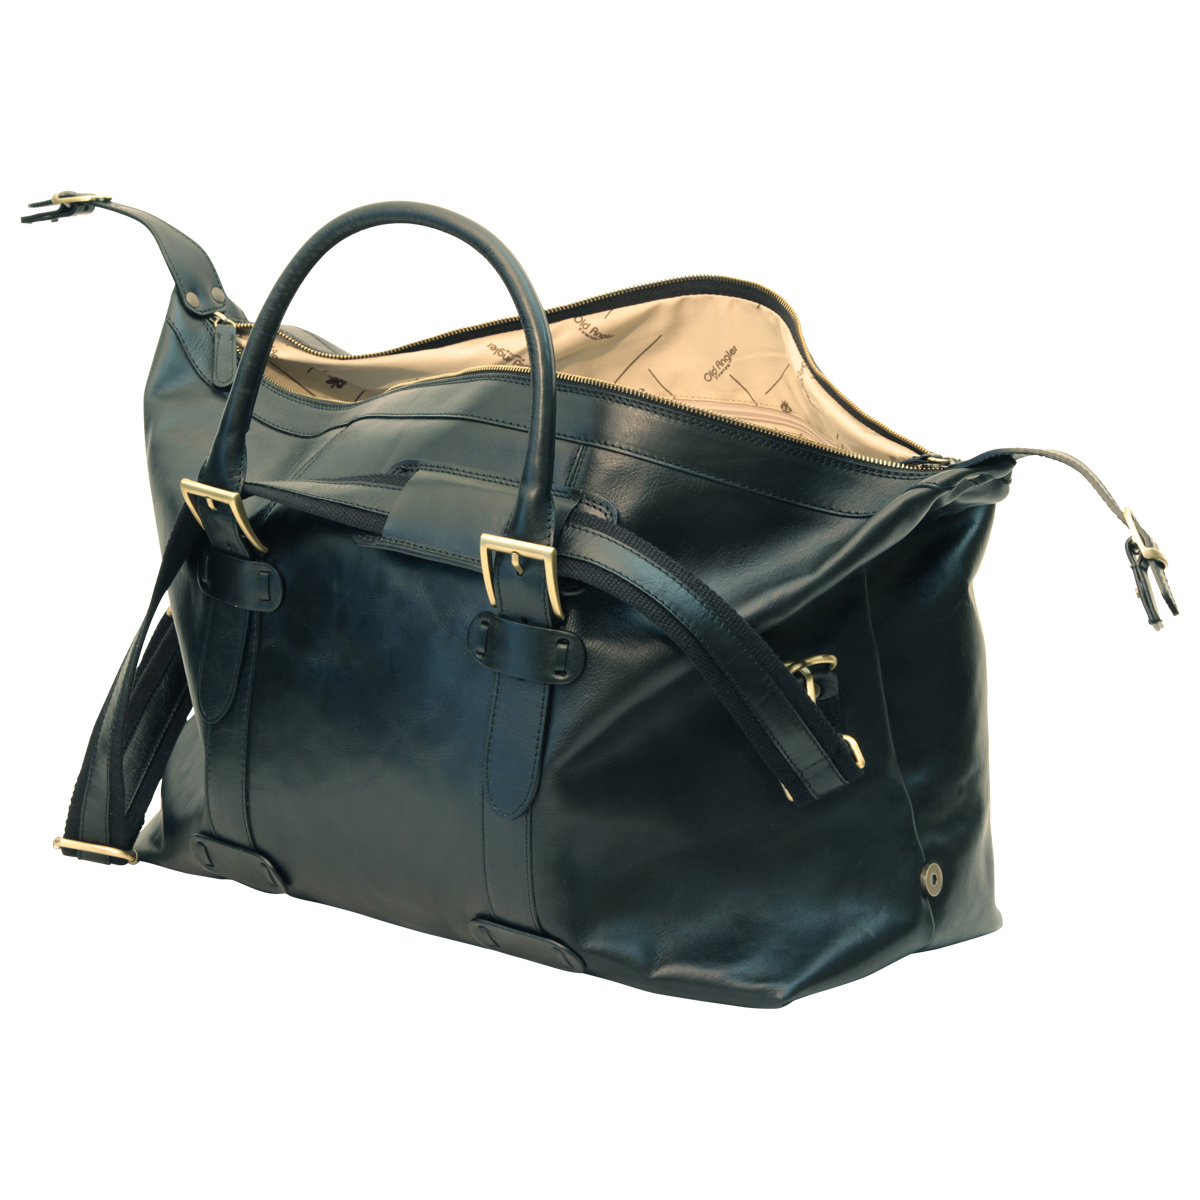 Cowhide leather Travel Bag - Black | 410689NE UK | Old Angler Firenze